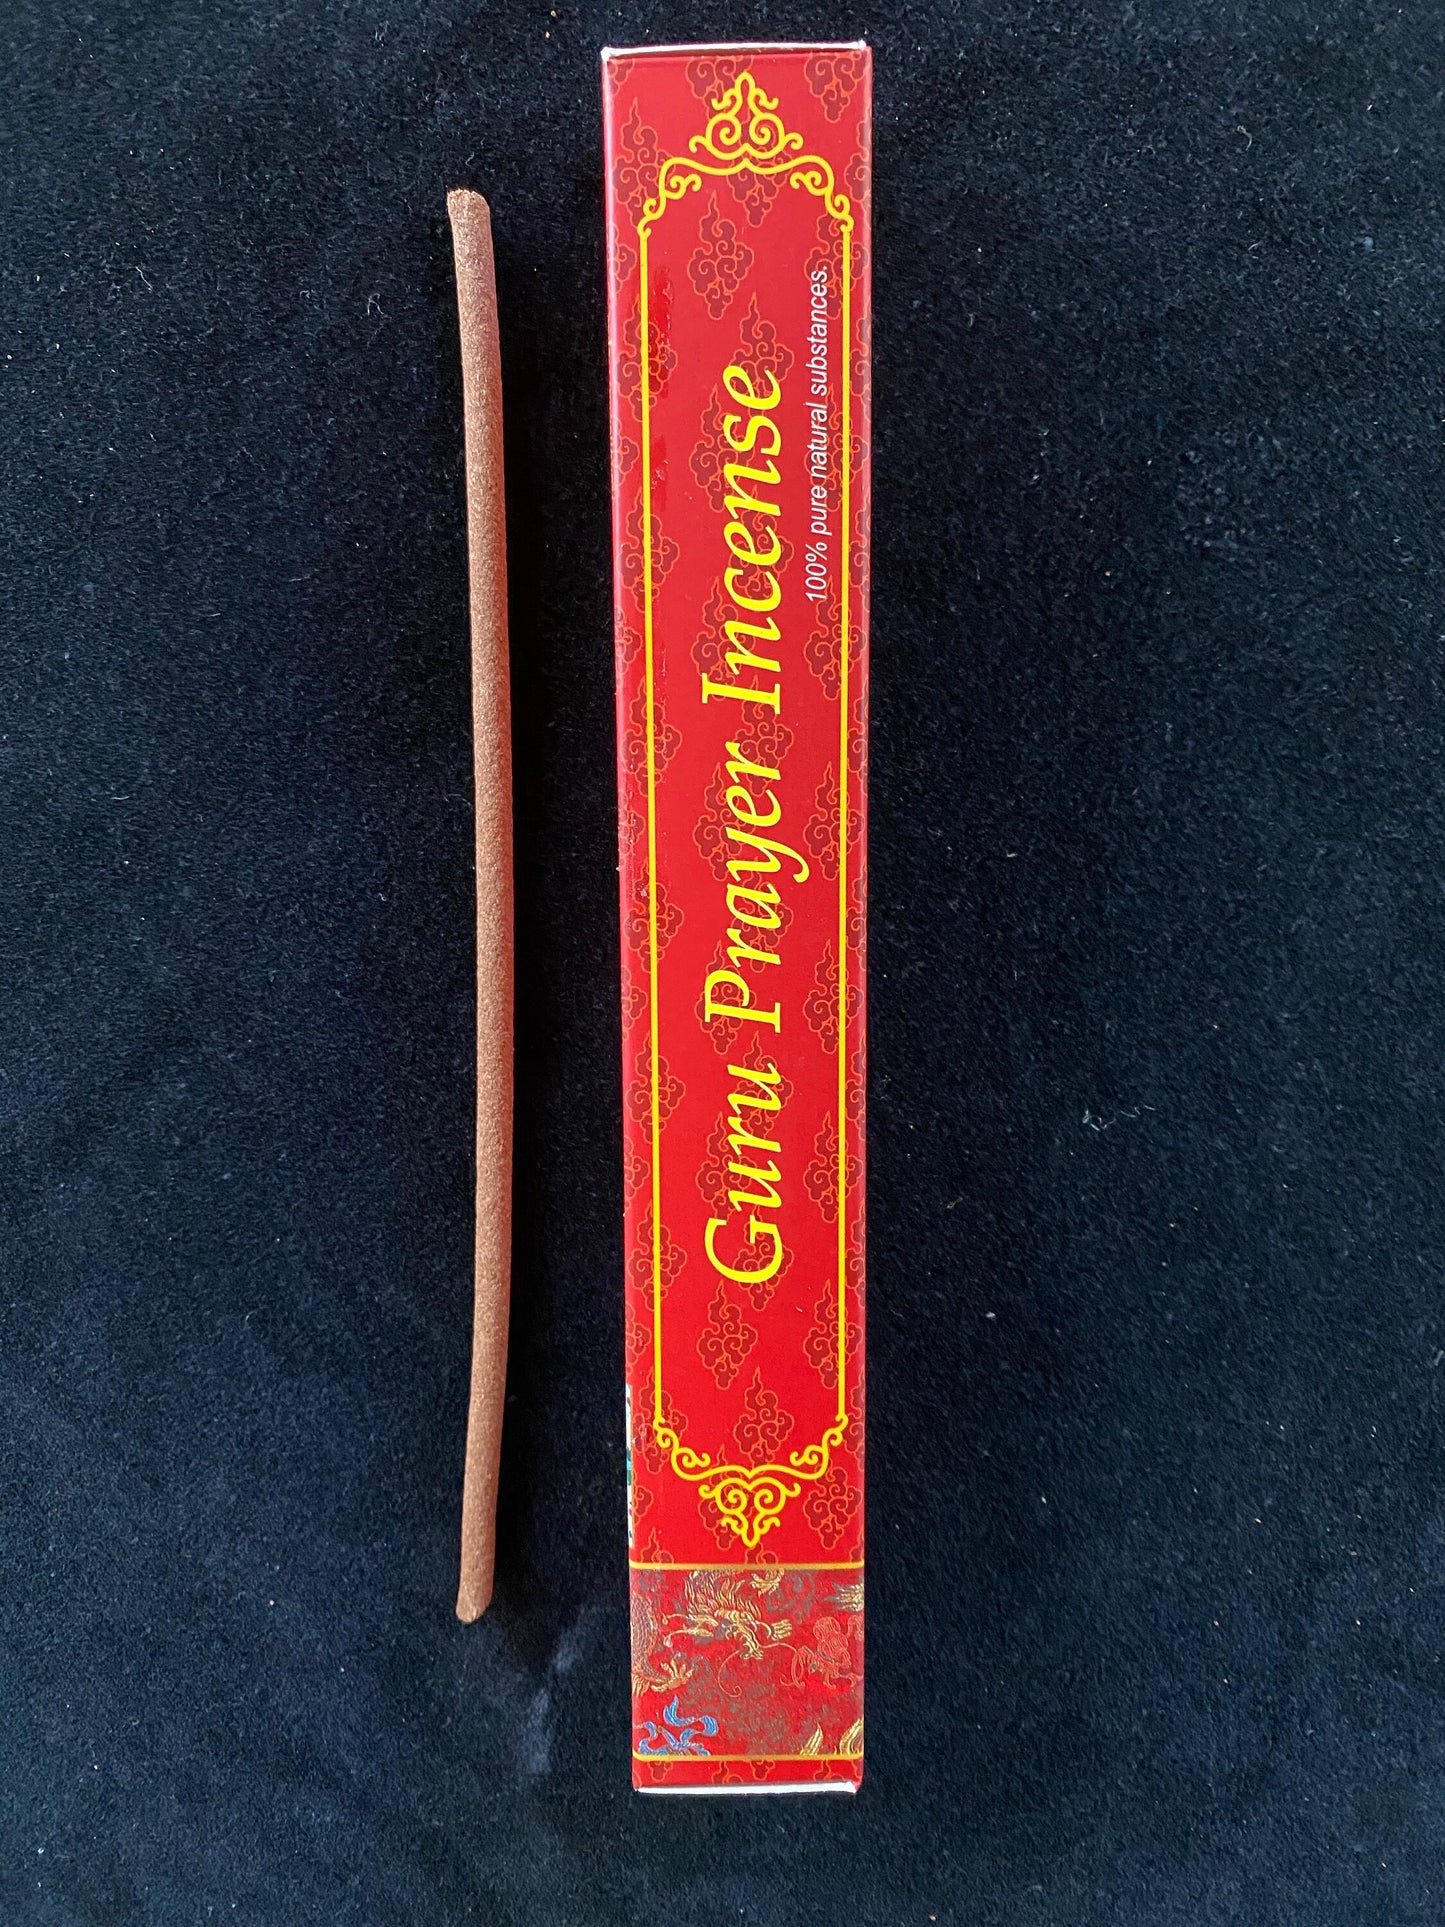 Guru Prayer Incense | Tibetan Incense | 21 sticks | Himalayan Arts